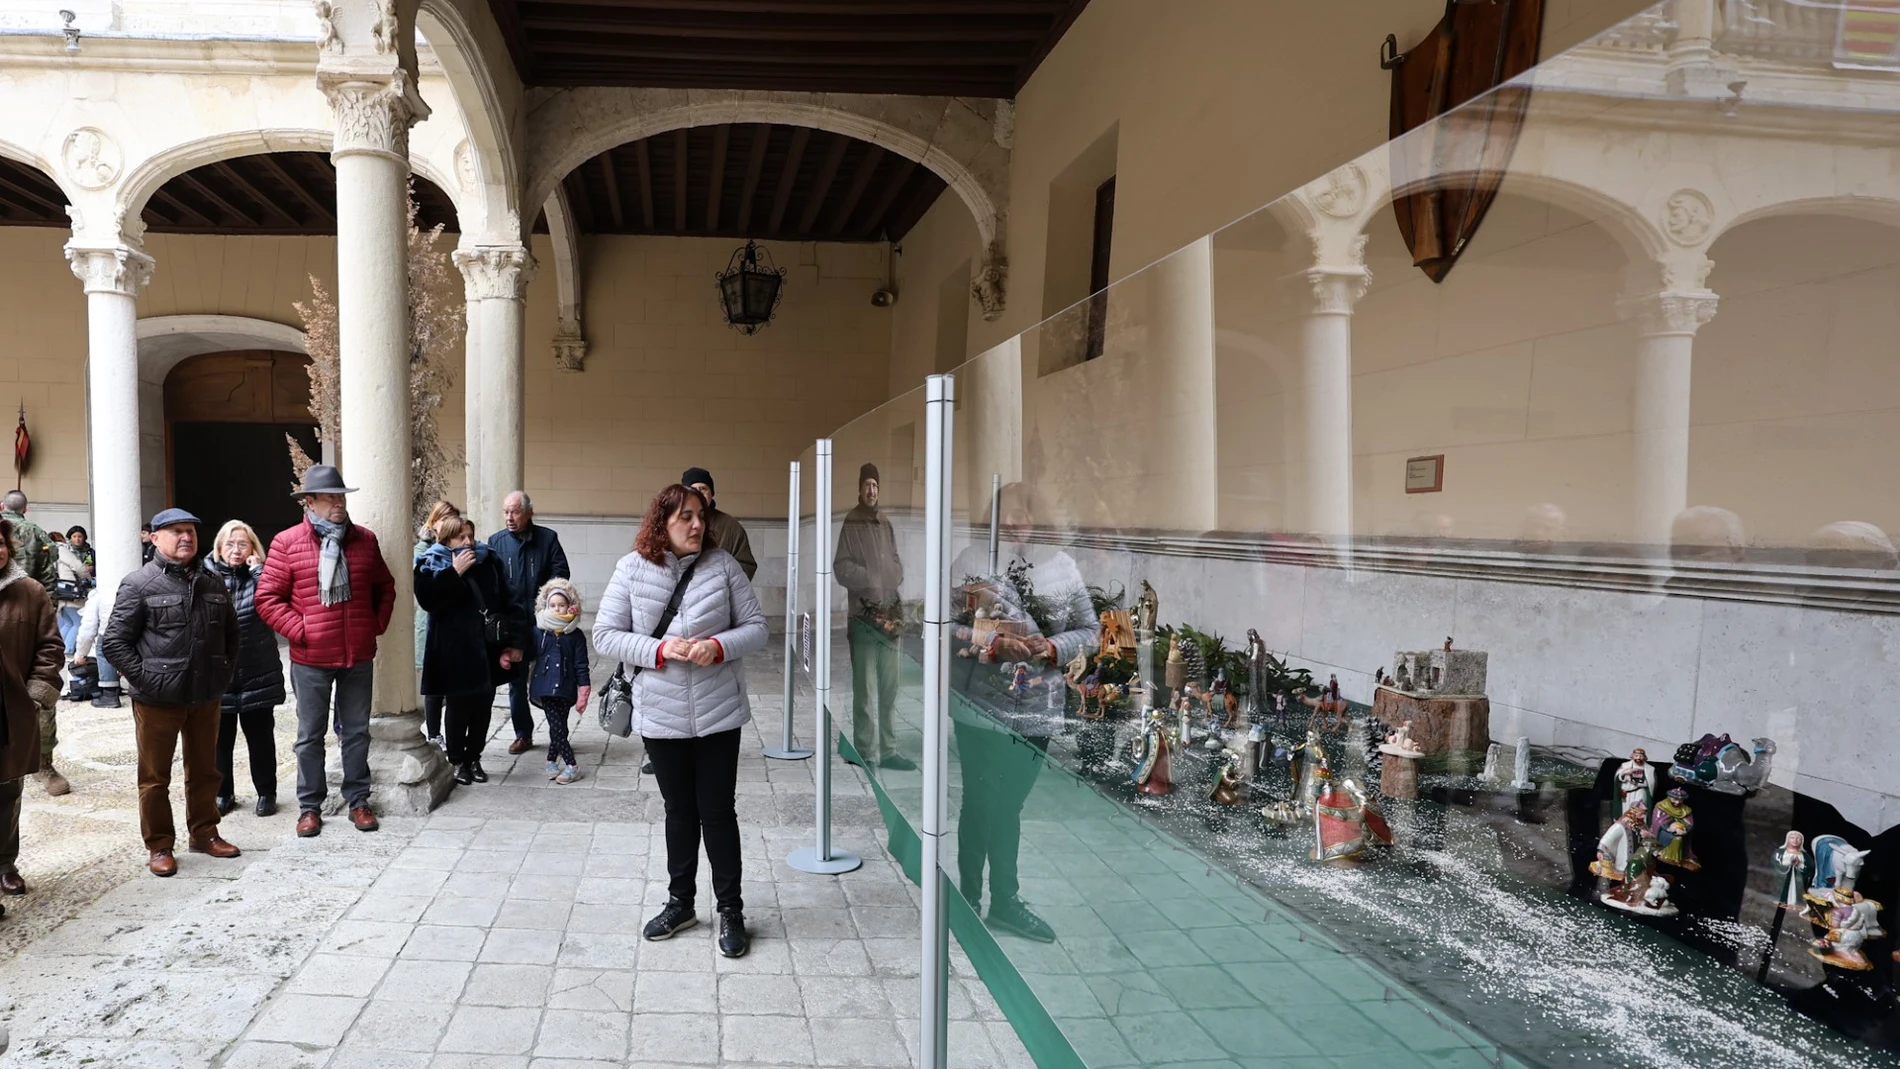 Inauguración de la "X Exposición de Belenes" en el Palacio Real de Valladolid